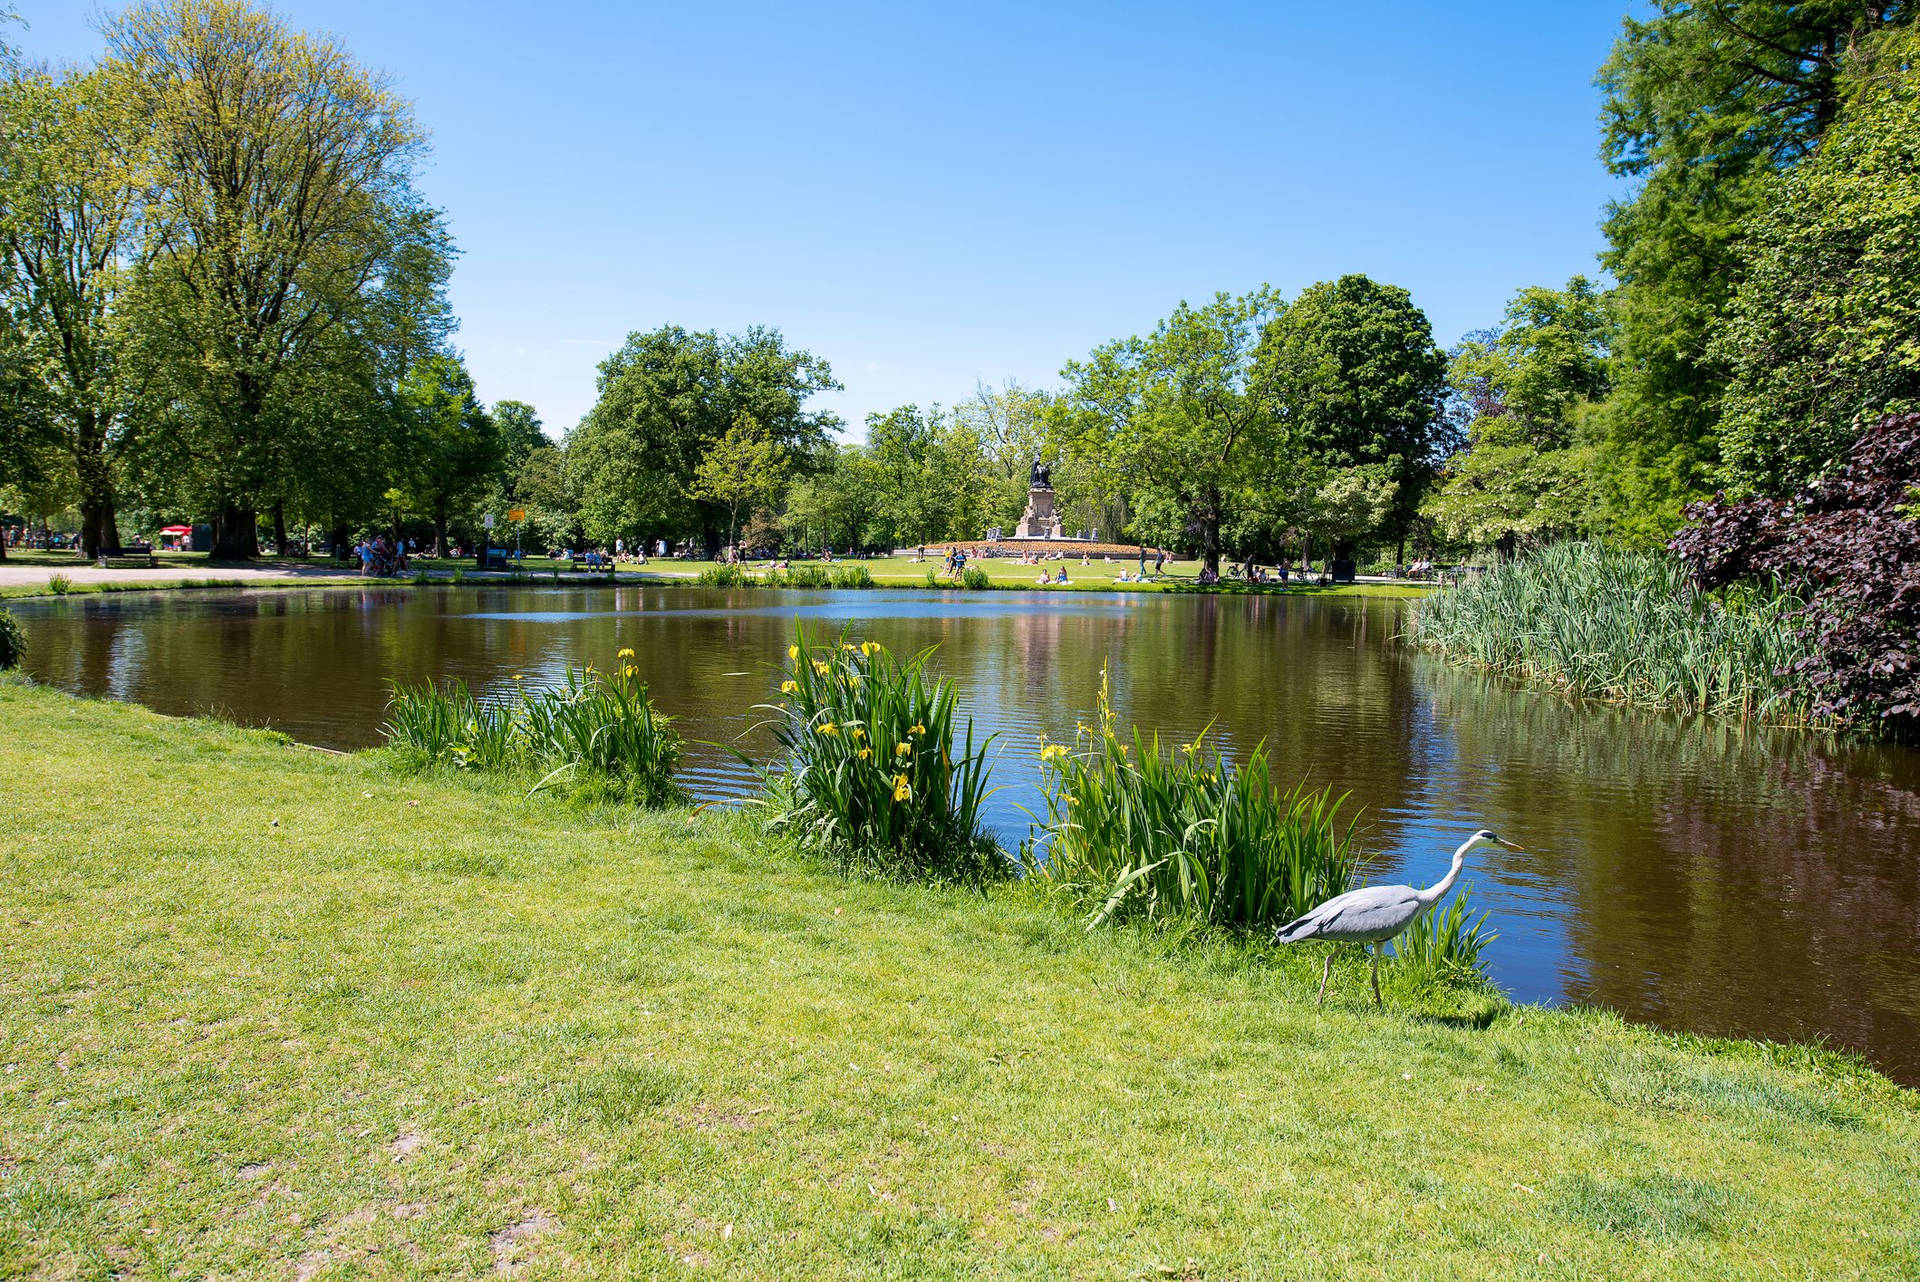 Amsterdam Vondel Park Pond Picture